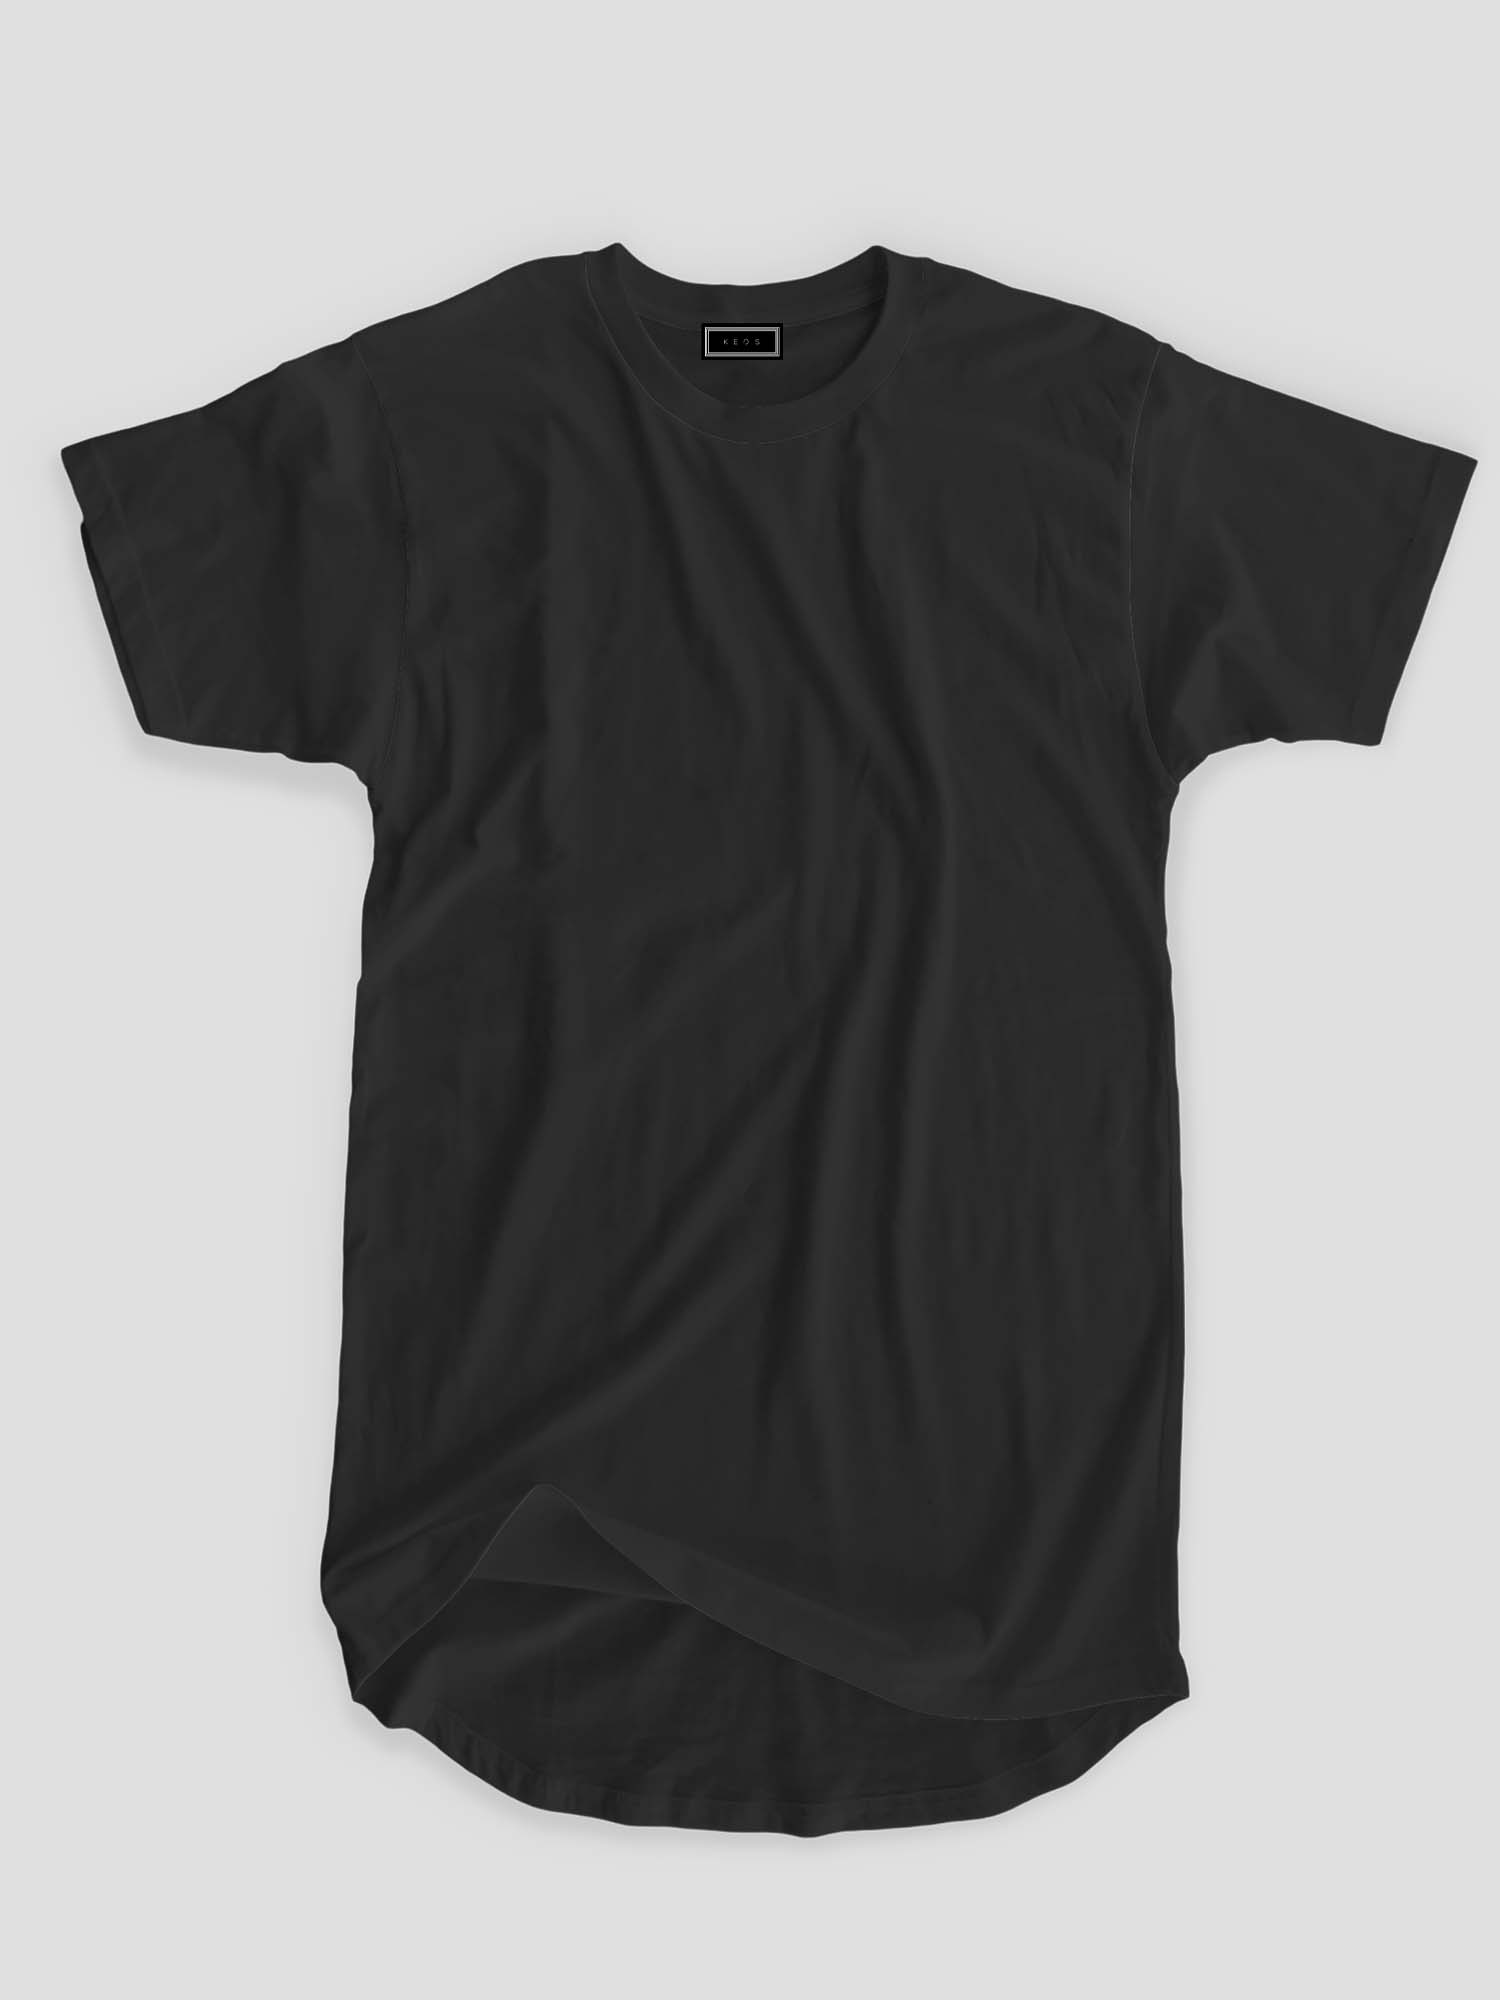 Longline Organic Cotton Essential T-shirt - Black - keos.life